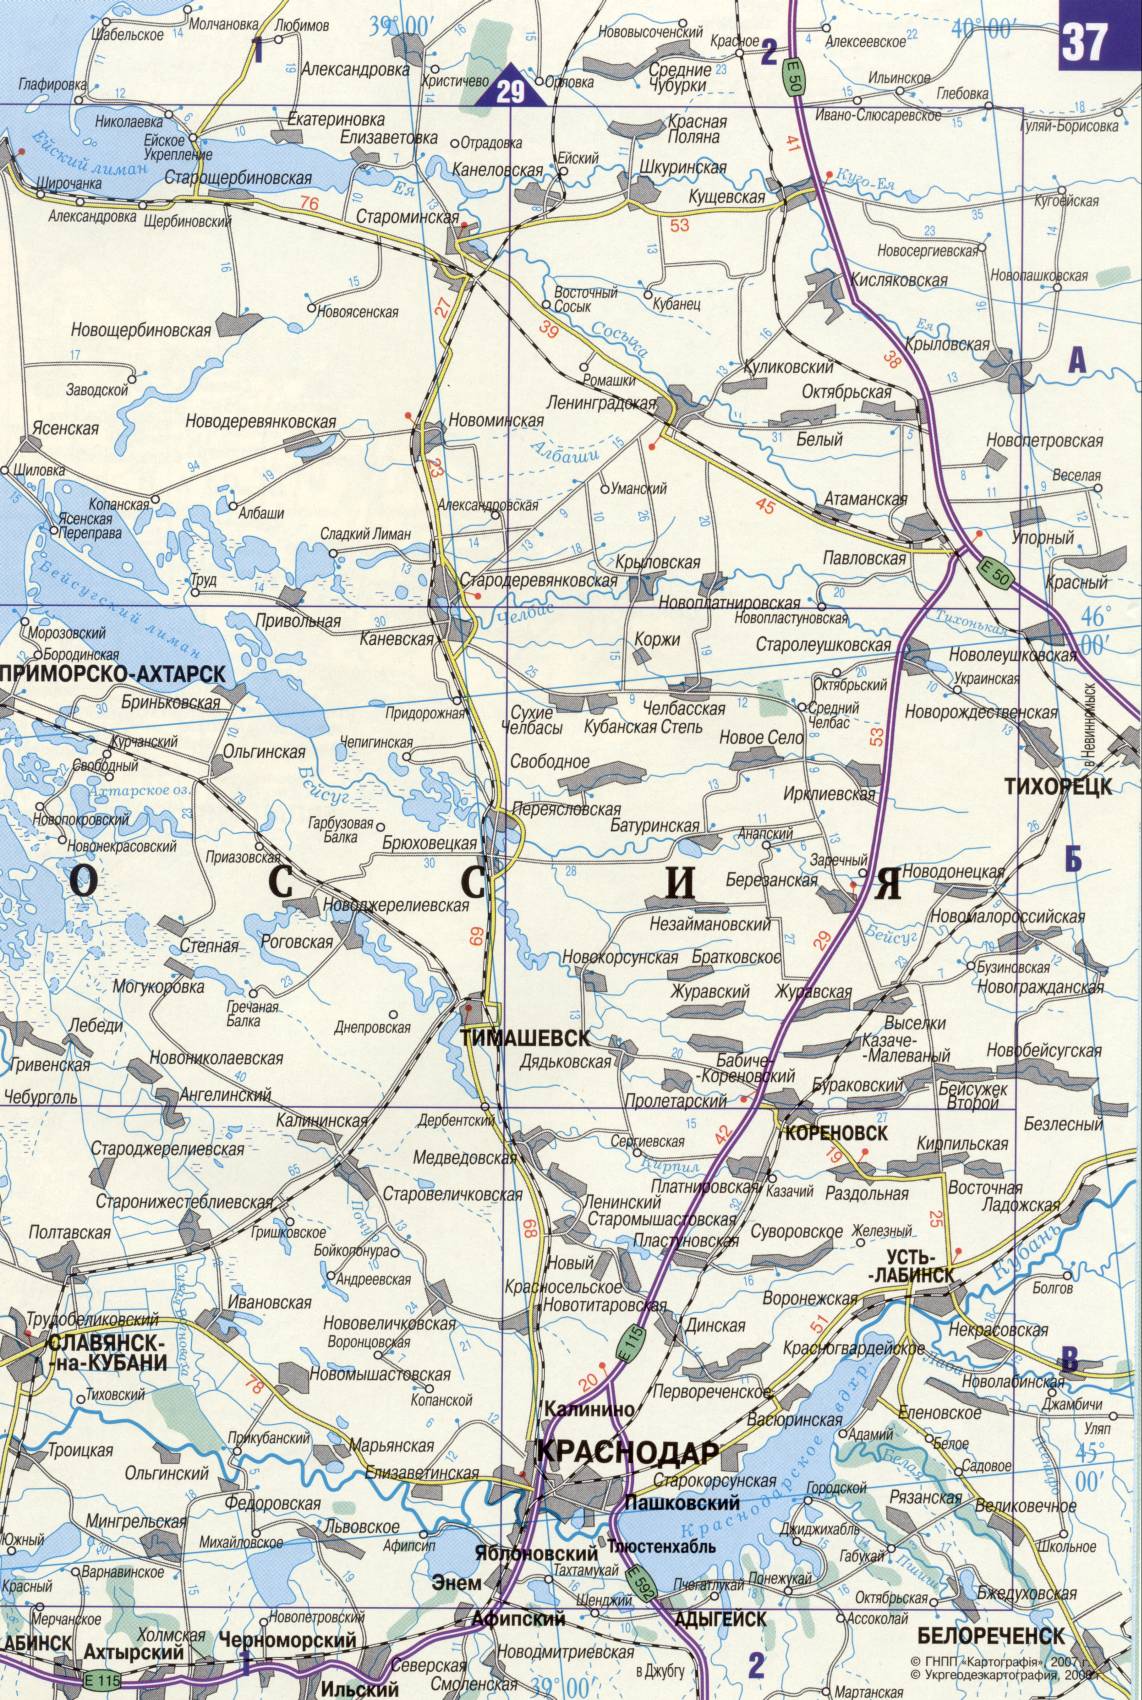 Karte der Ukraine. Detaillierte Straßenkarte der Ukraine avtomobilnog Satin. kostenlos herunterladen, J3